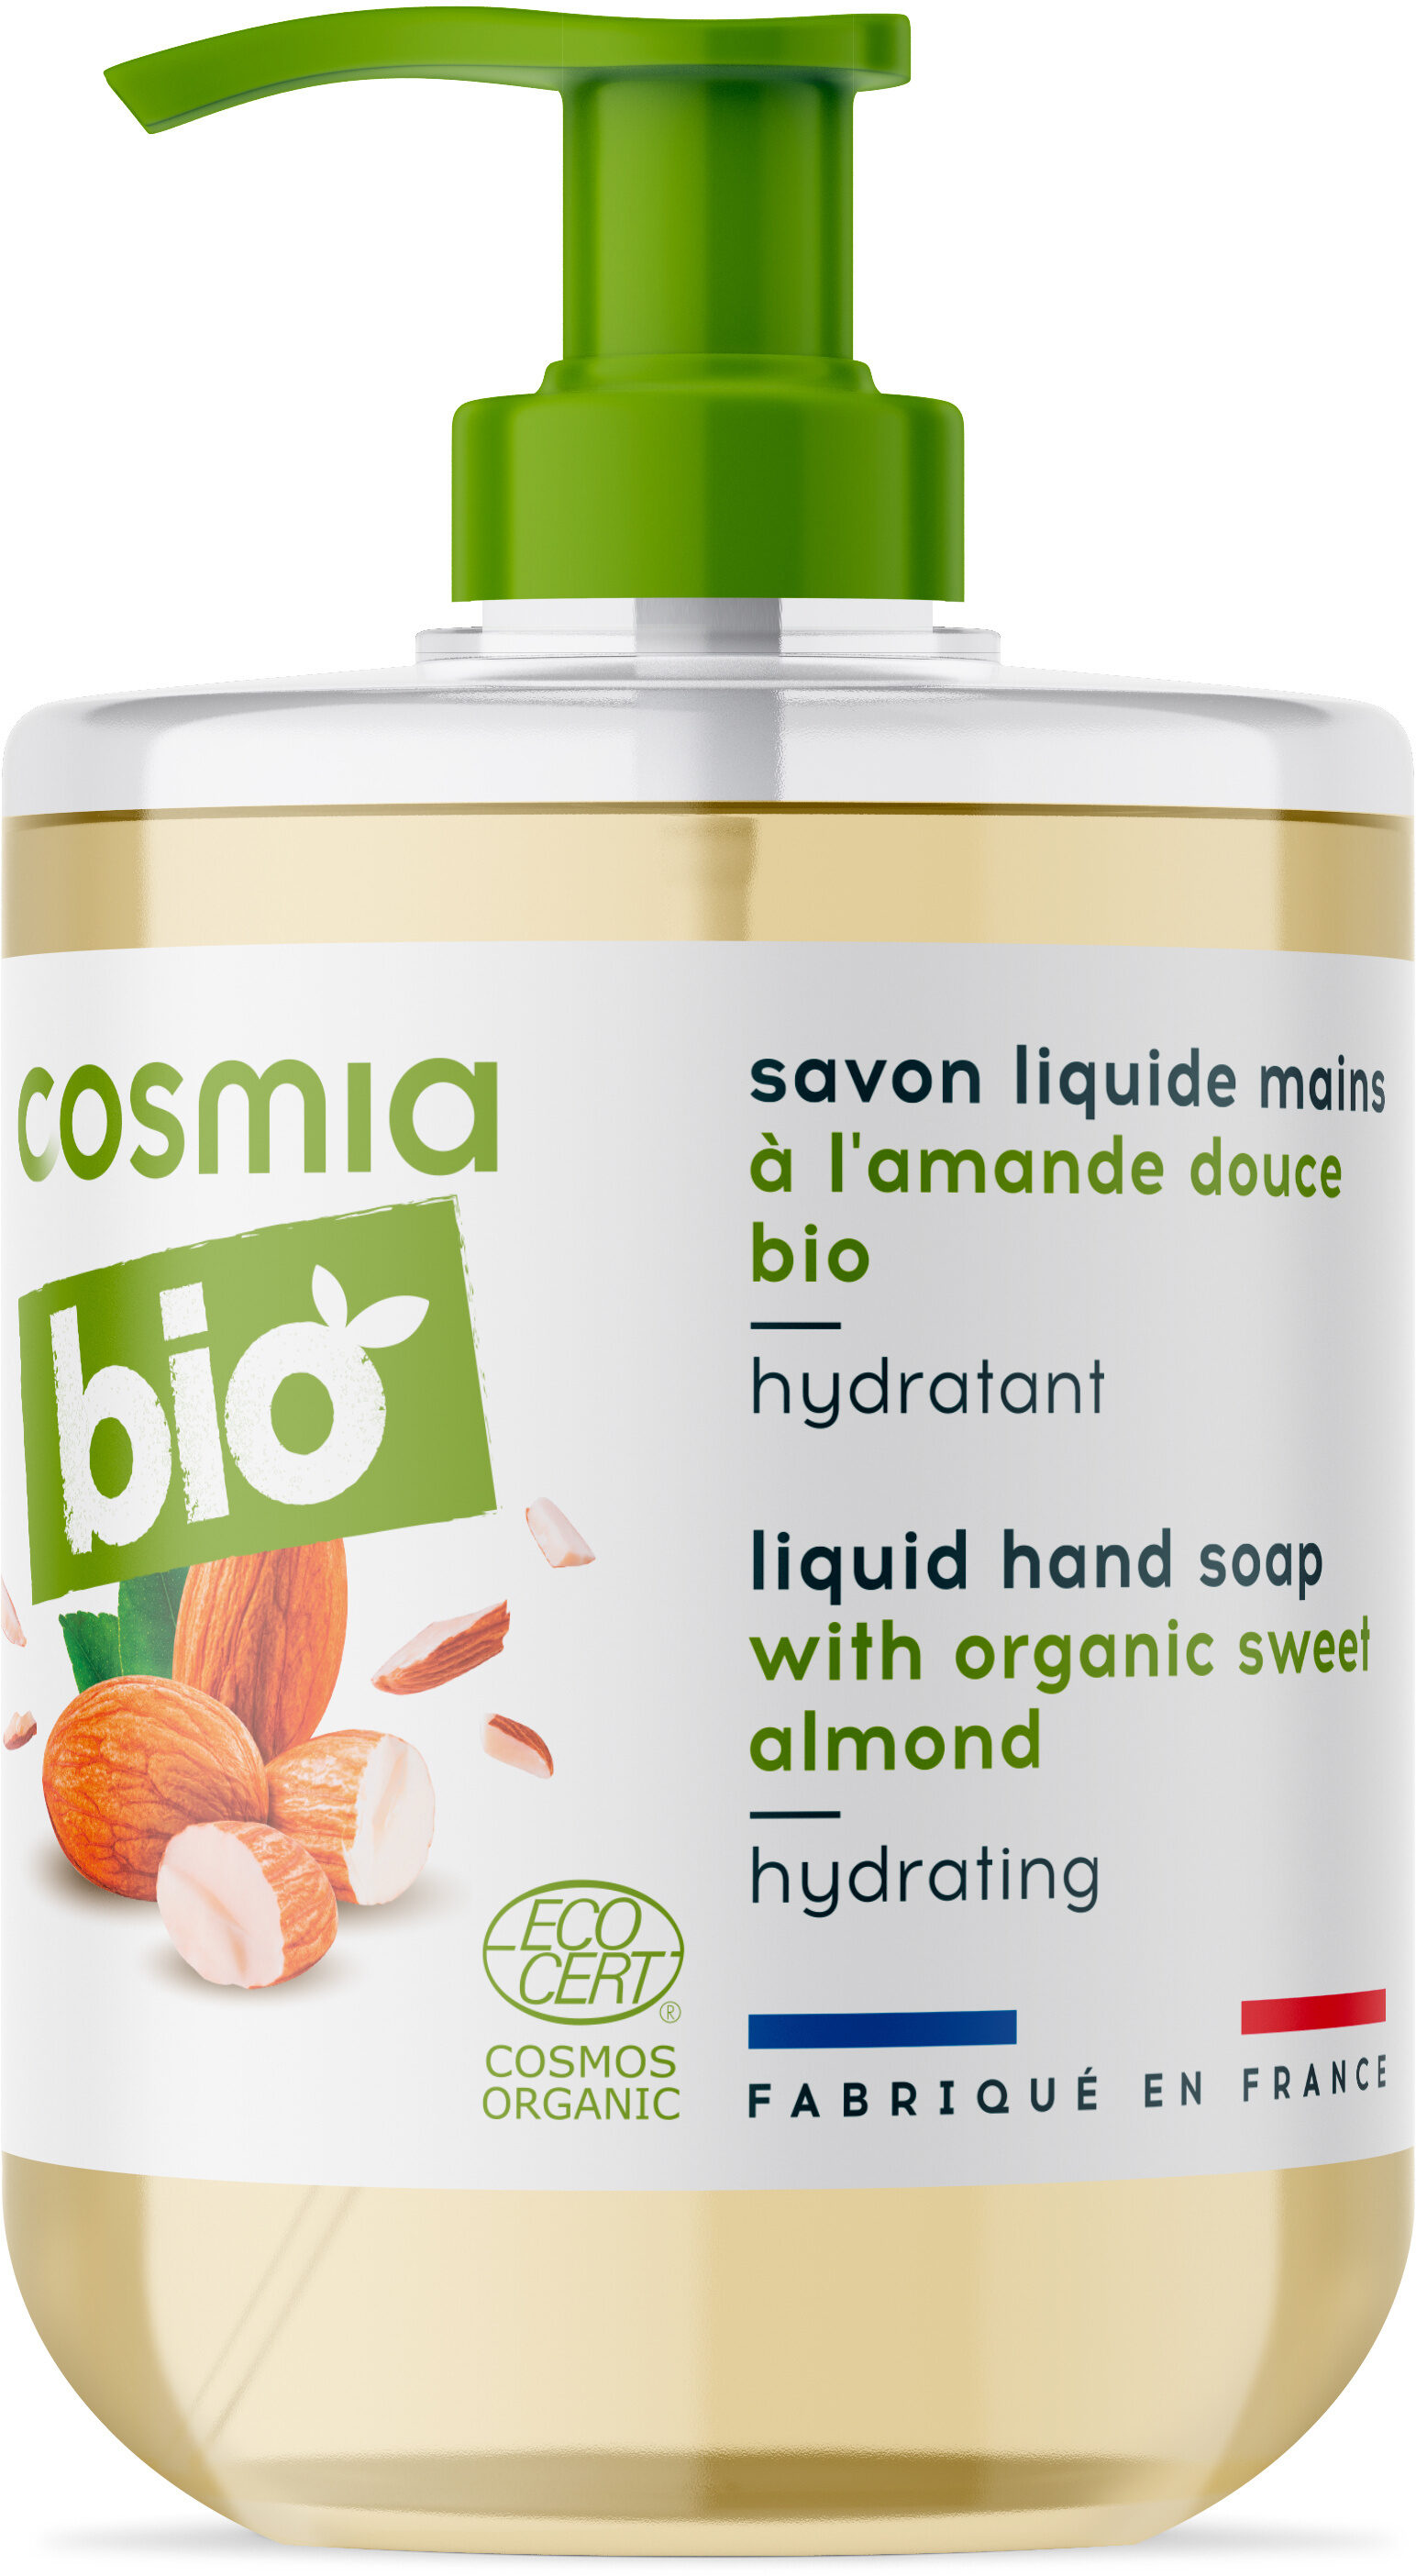 Bio savon liquide mains a l'amande douce bio - Producte - fr